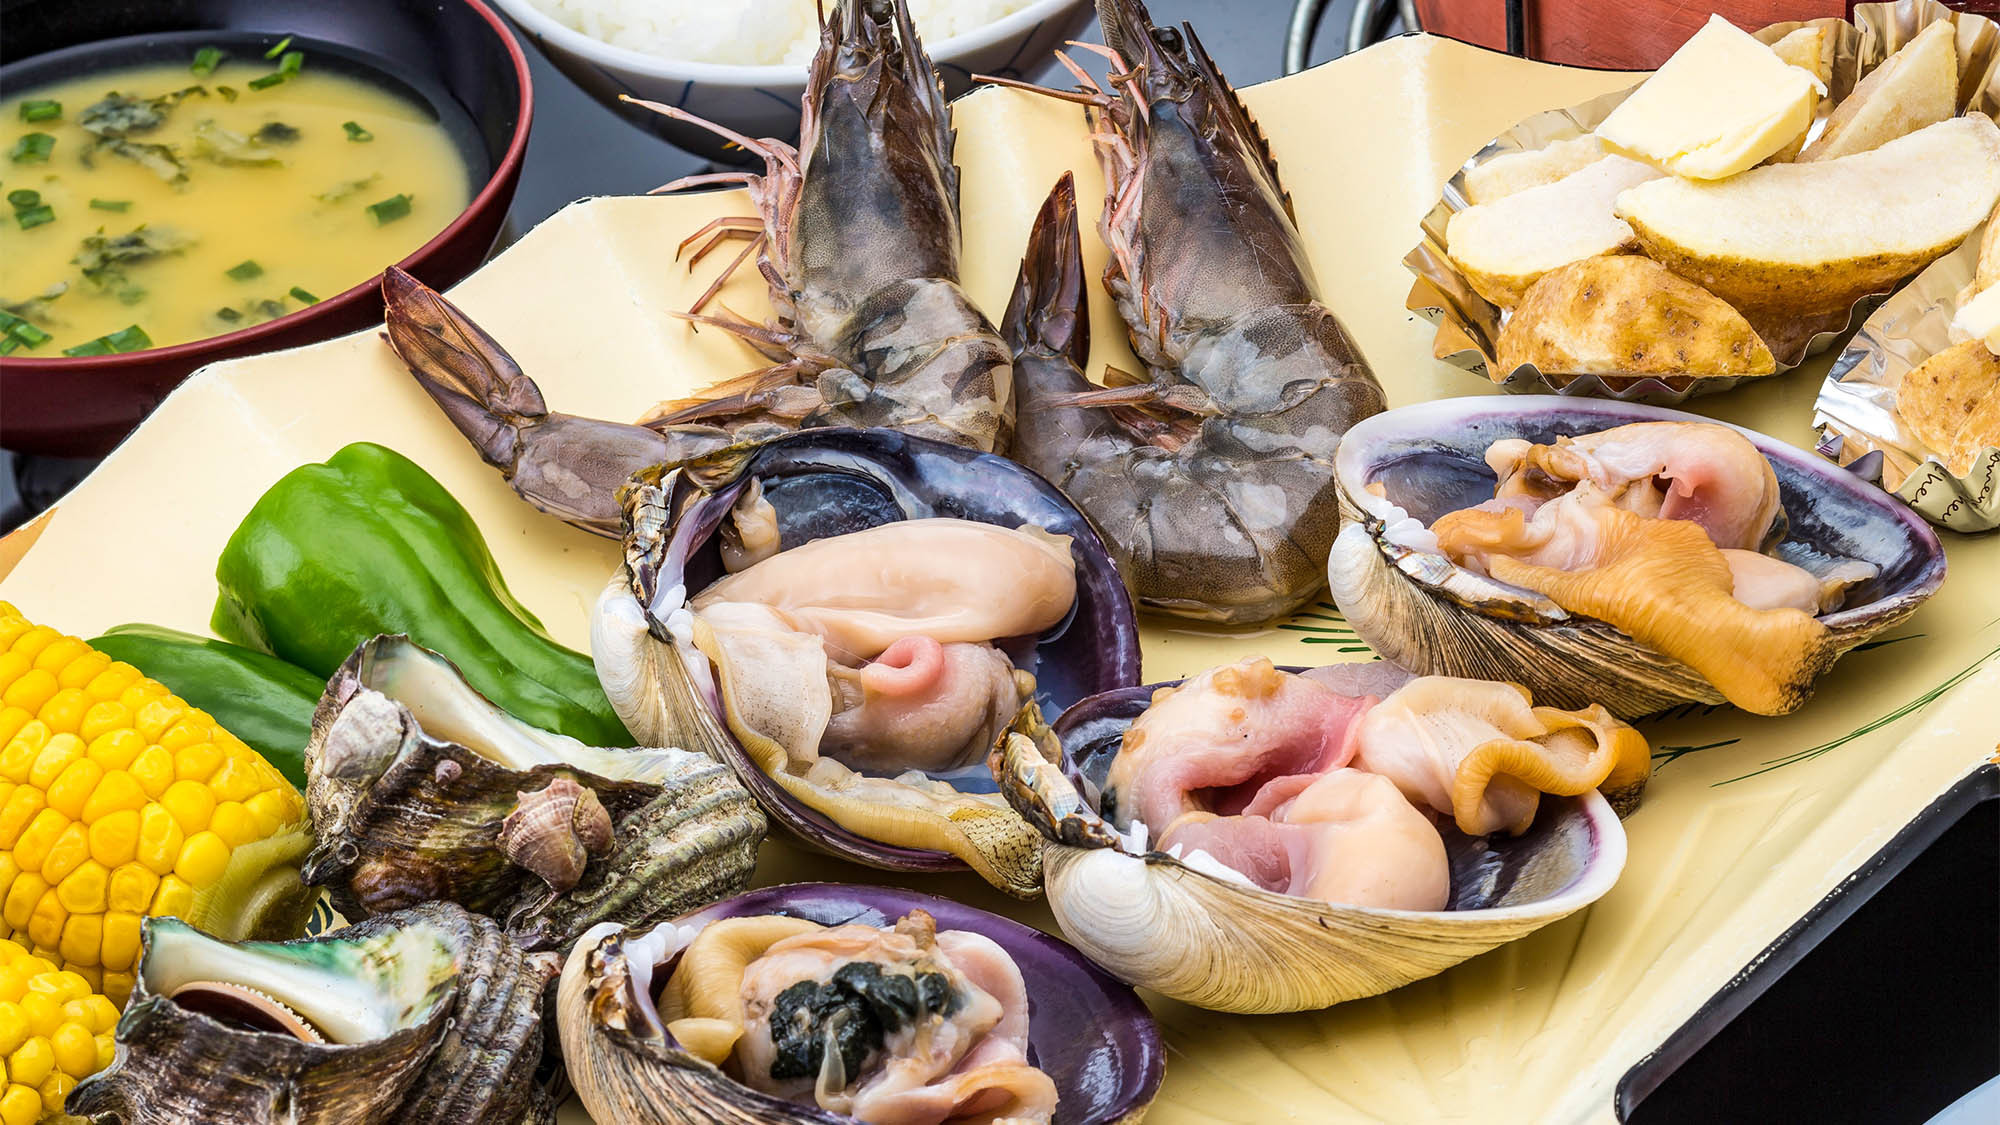 ・貝類伊良湖で獲れた魚介類は最高です